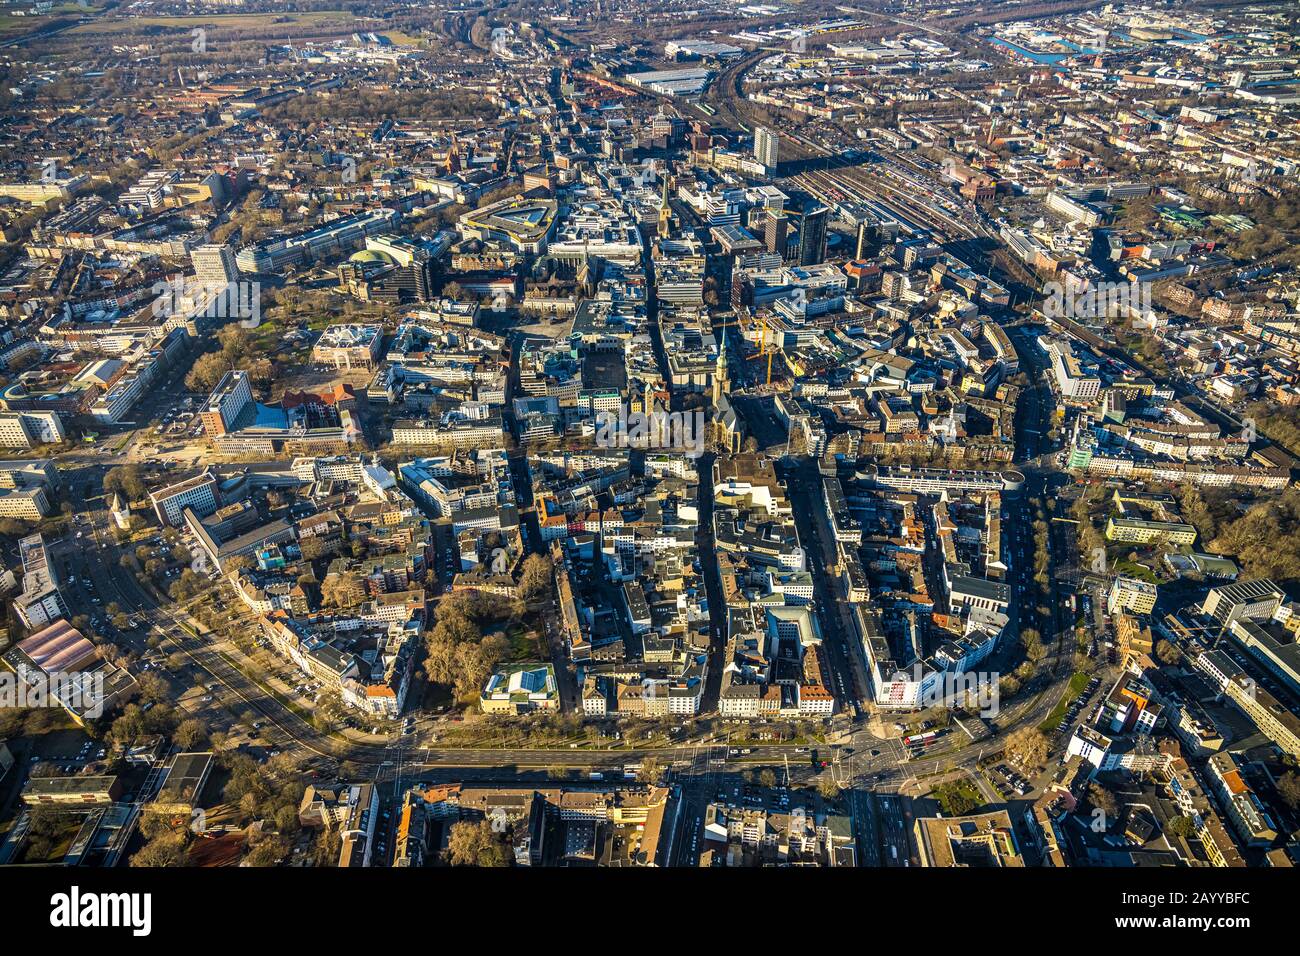 Vista aérea, vista general del centro de la ciudad, Ciudad , Dortmund, zona de Ruhr, Renania del Norte-Westfalia, Alemania, DE, Europa, vista de los pájaros-ojos, fotografía aérea, aérea Foto de stock